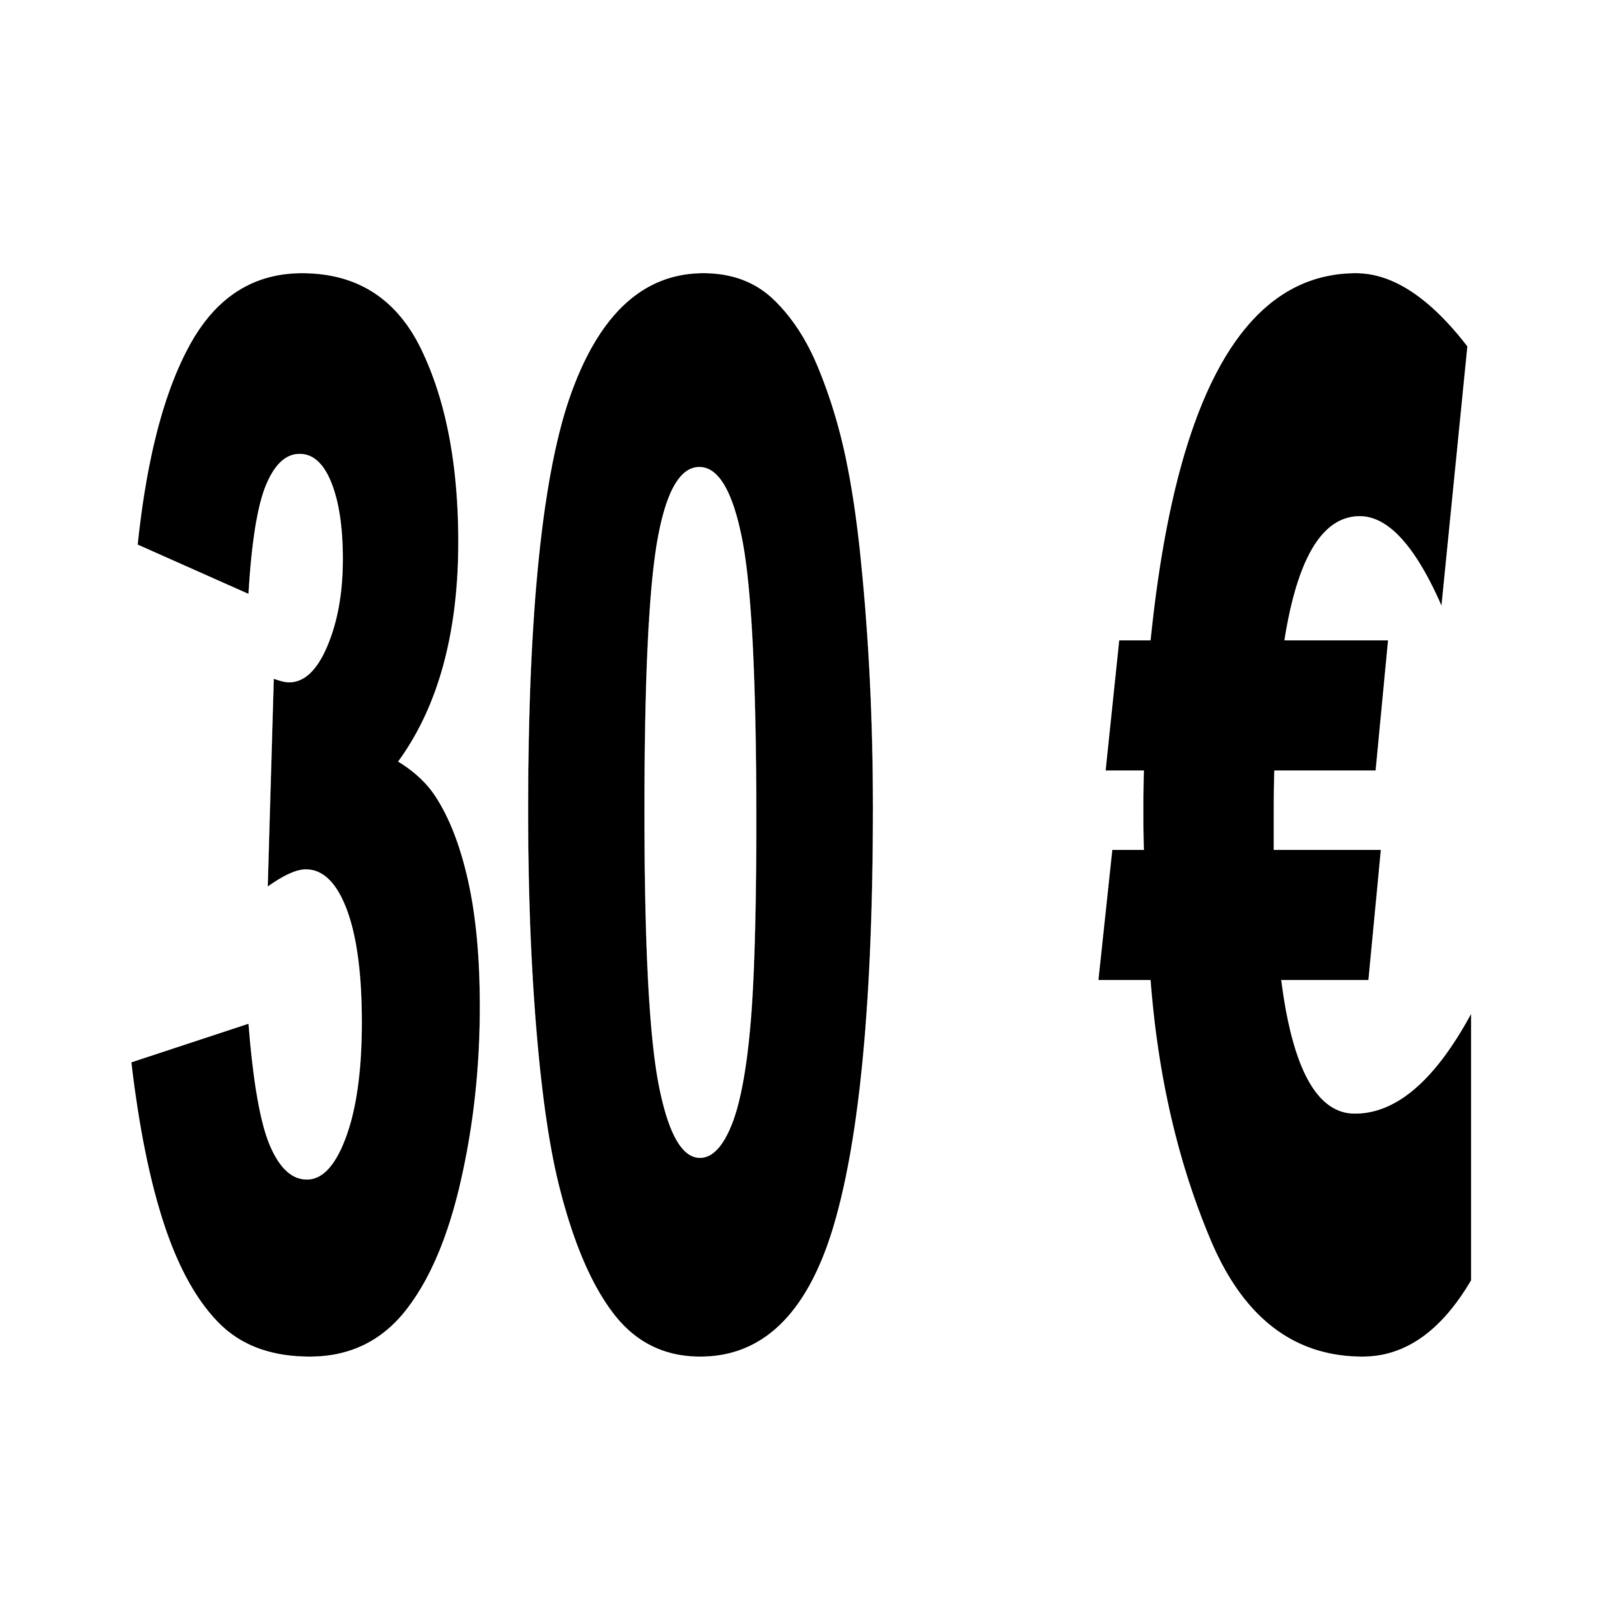 30 euros en consumiciones